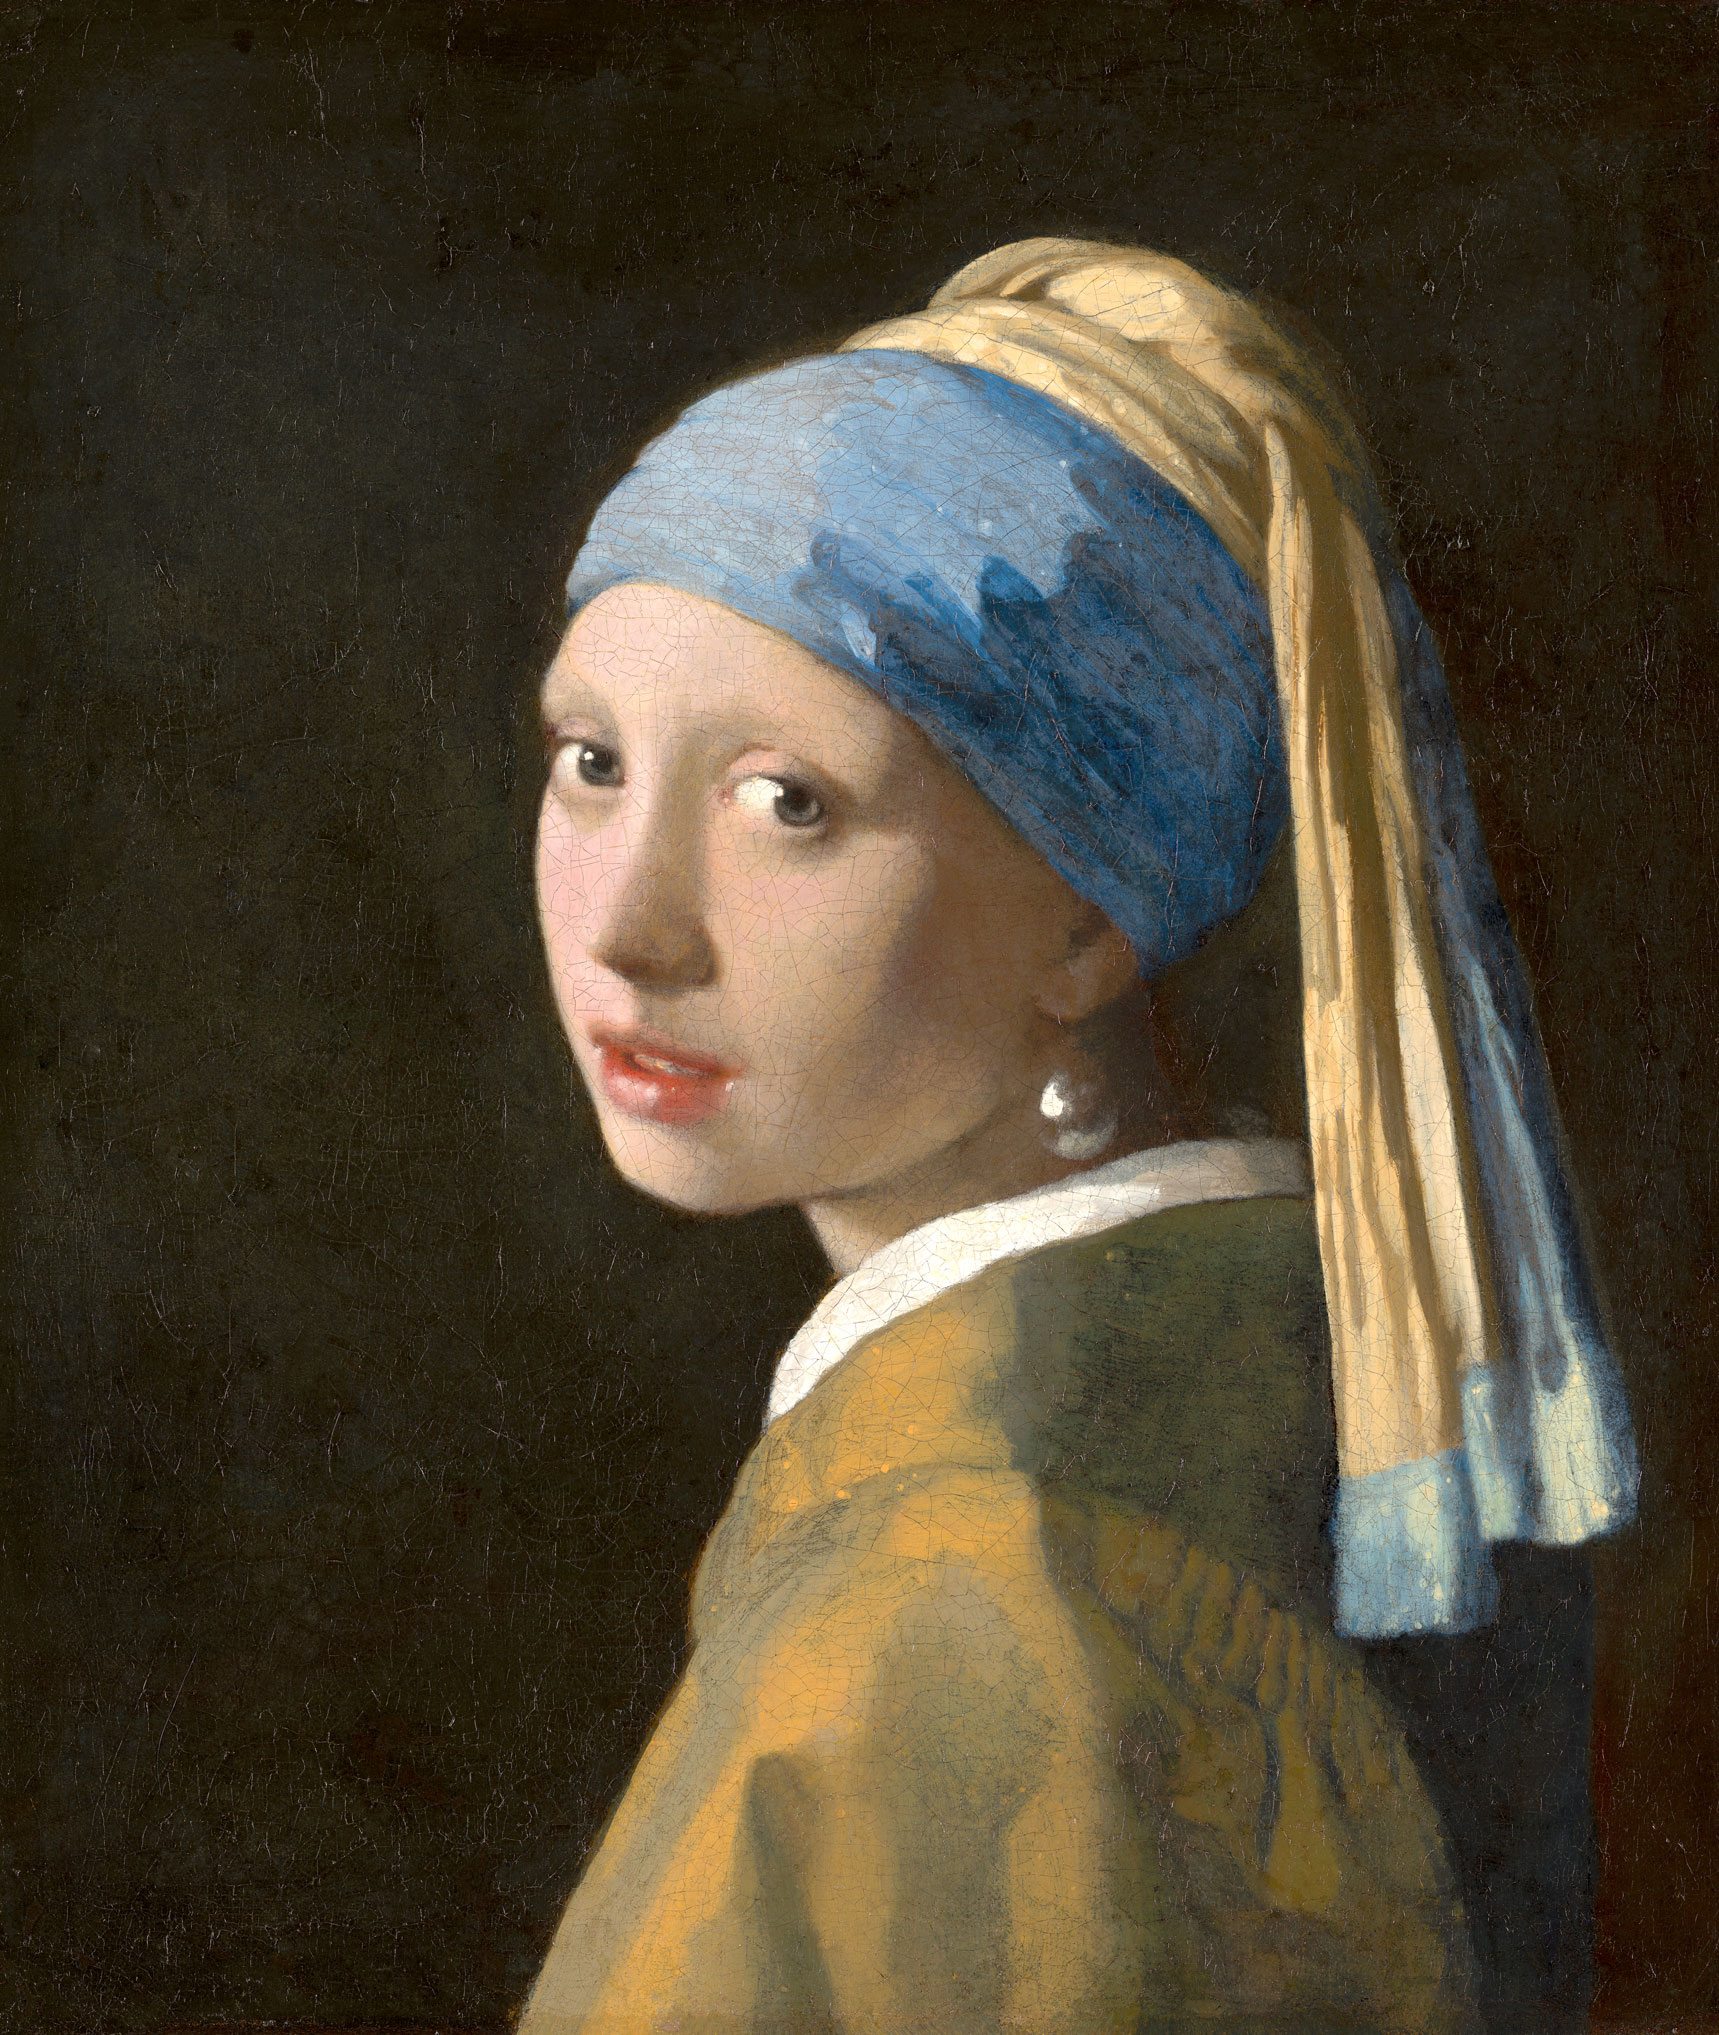 Johannes Vermeer, "La jeune fille à la perle", 1664–67. Mauritshuis, The Hague. Bequest of Arnoldus Andries des Tombe, The Hague